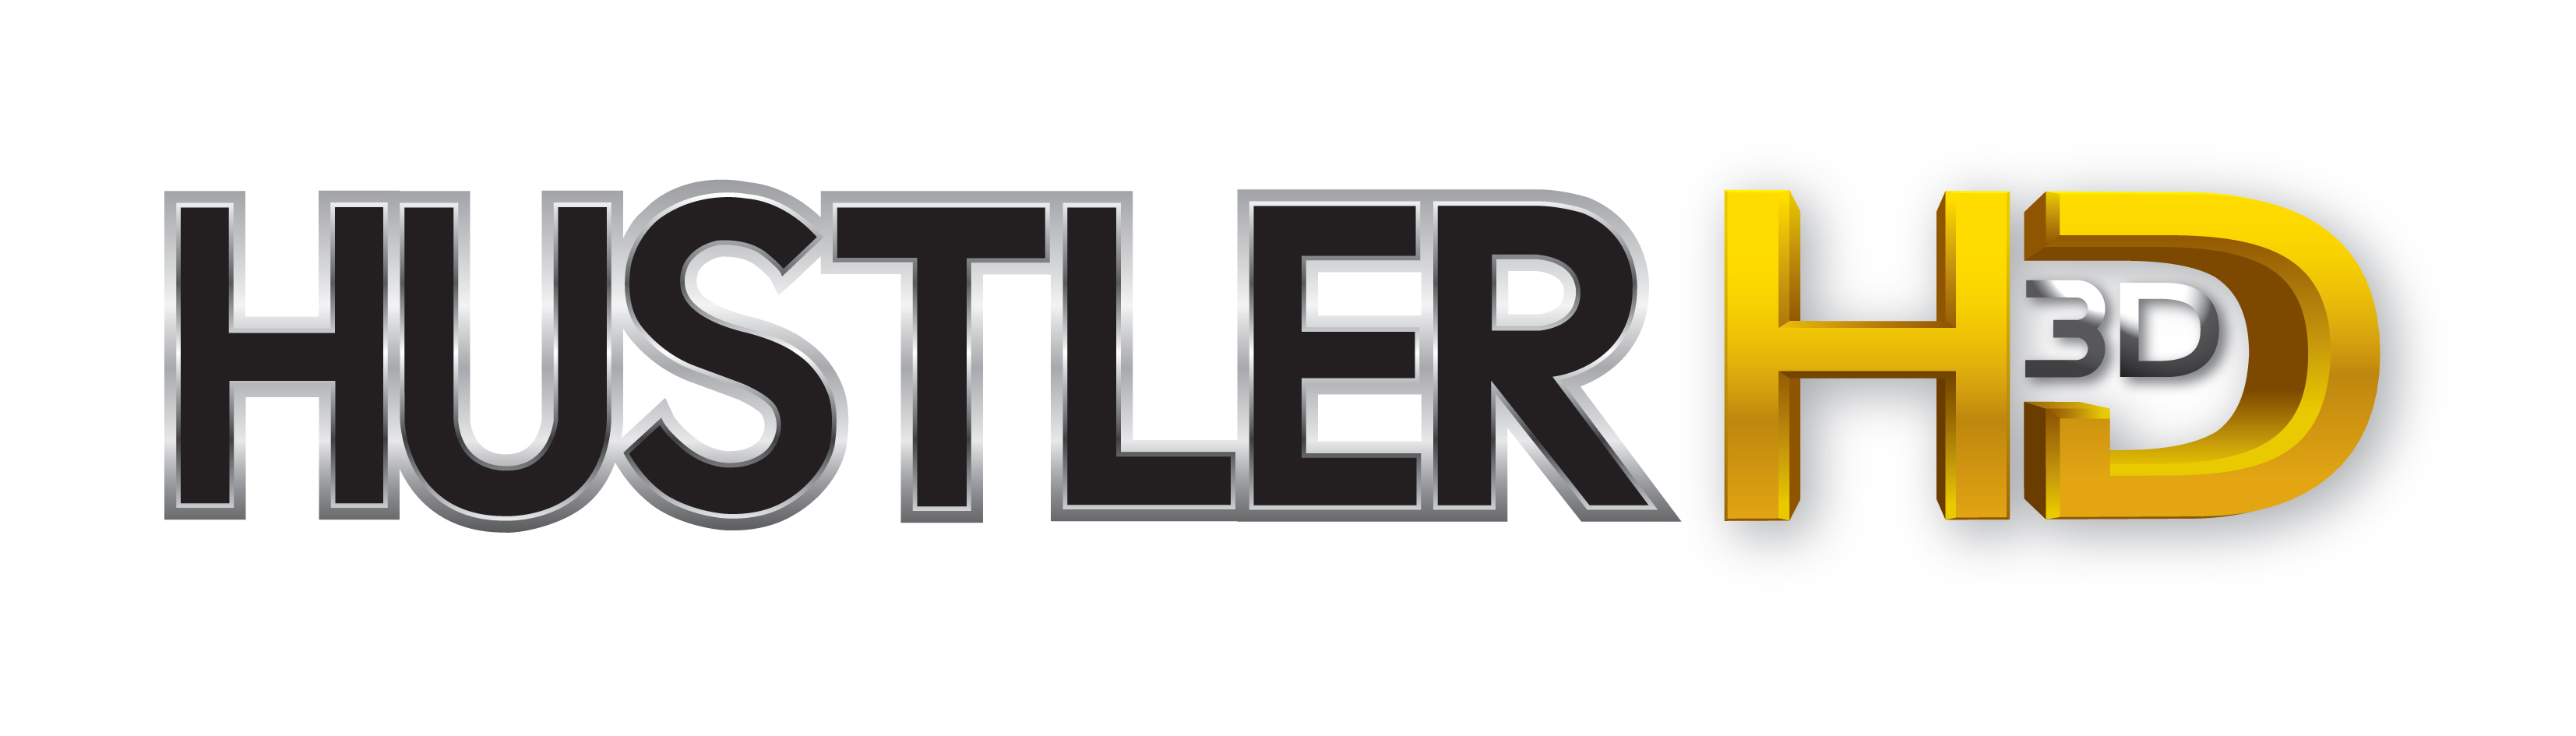 Hustler TV, Dorcel TV und Vivid TV Europe ASTRA 19,2 ° Viaccess Karte.